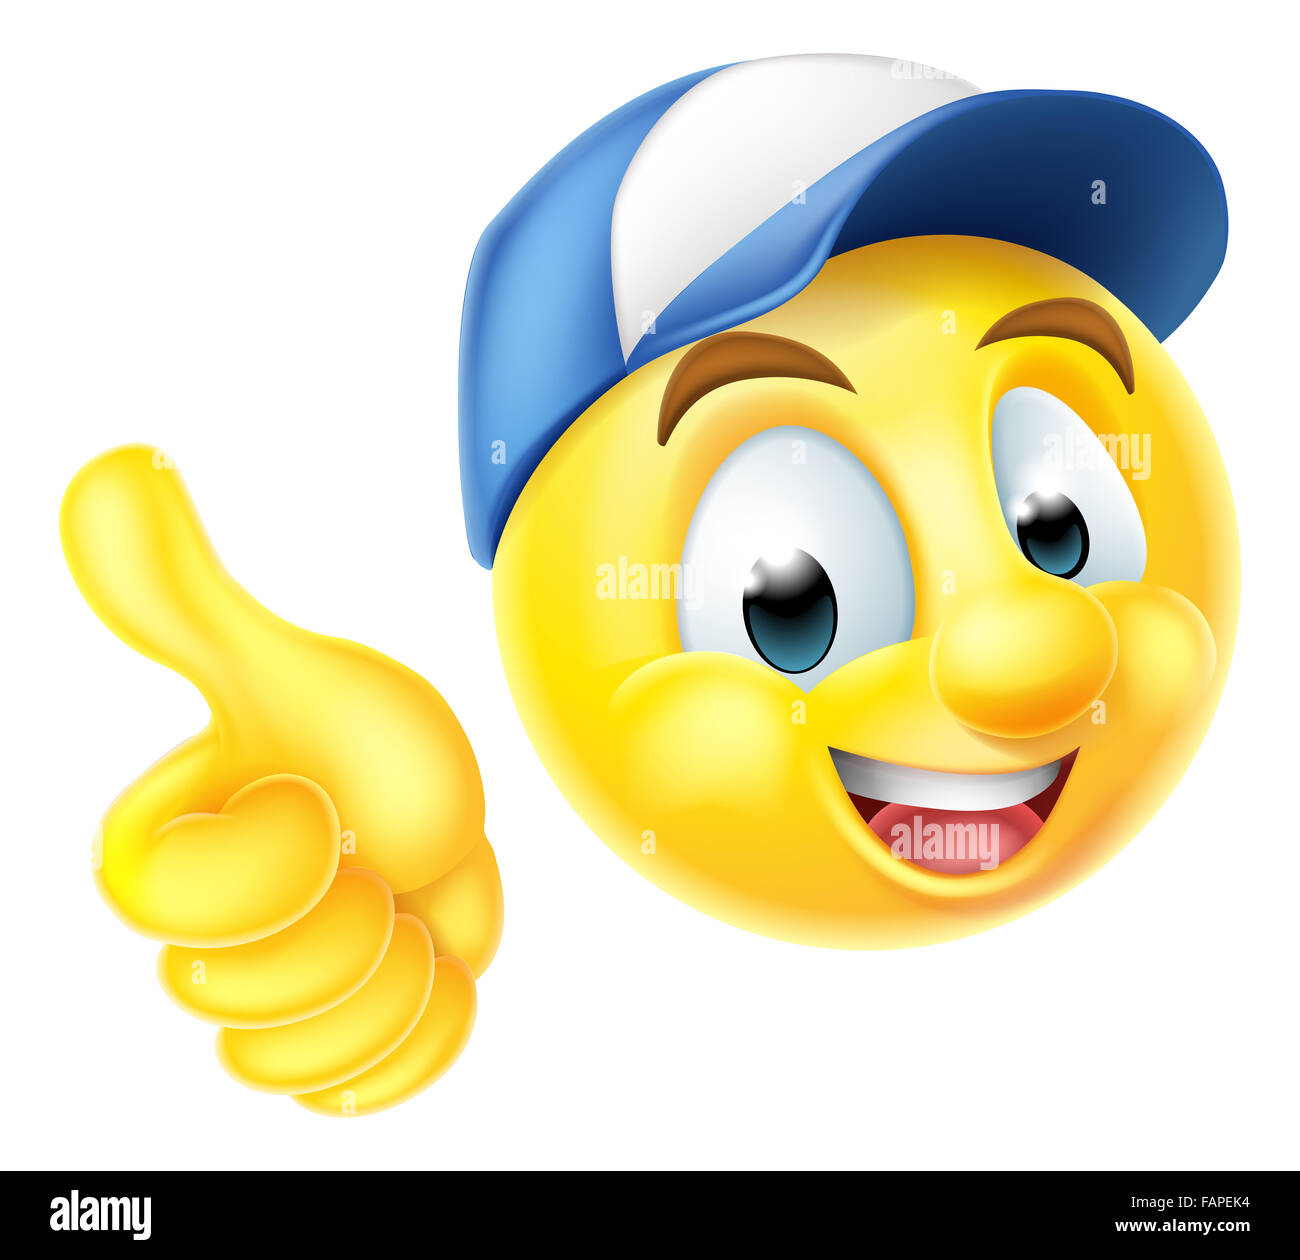 Cartoon gli Emoji emoticon Smiley face carattere indossando un cappello dei  lavoratori e dando un pollice in alto Foto stock - Alamy